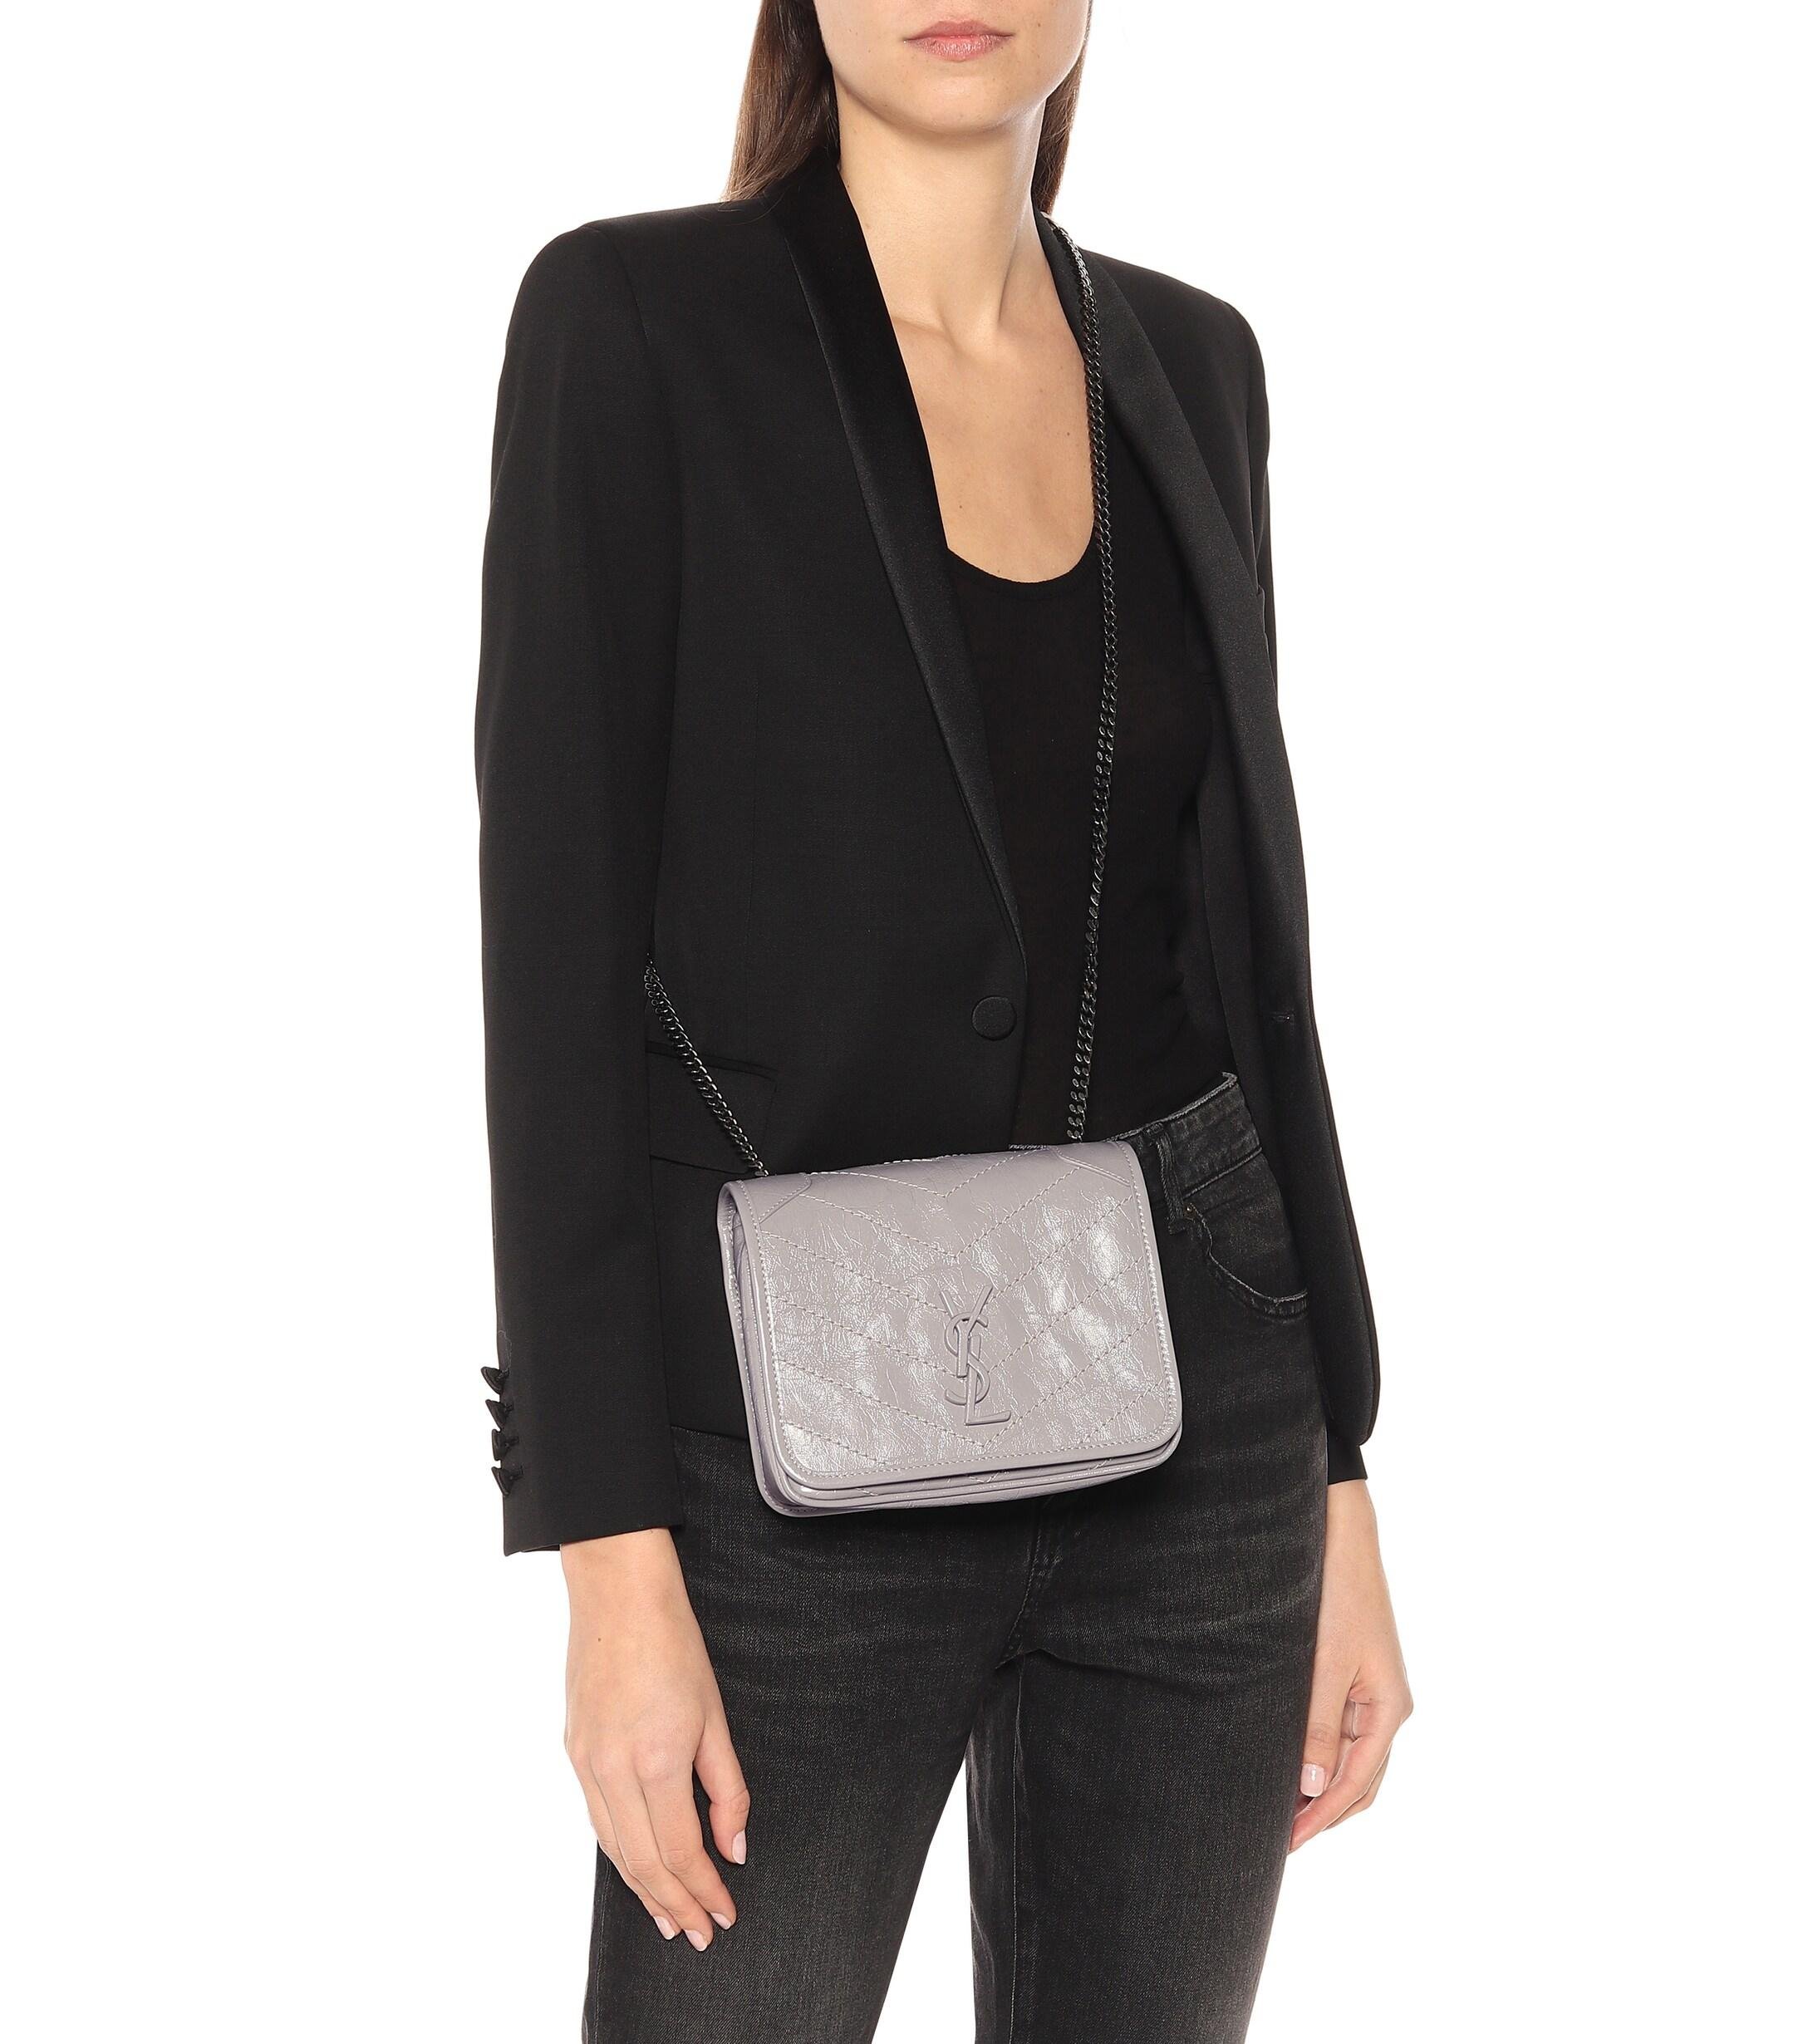 Saint Laurent Mini Niki Leather Handbag